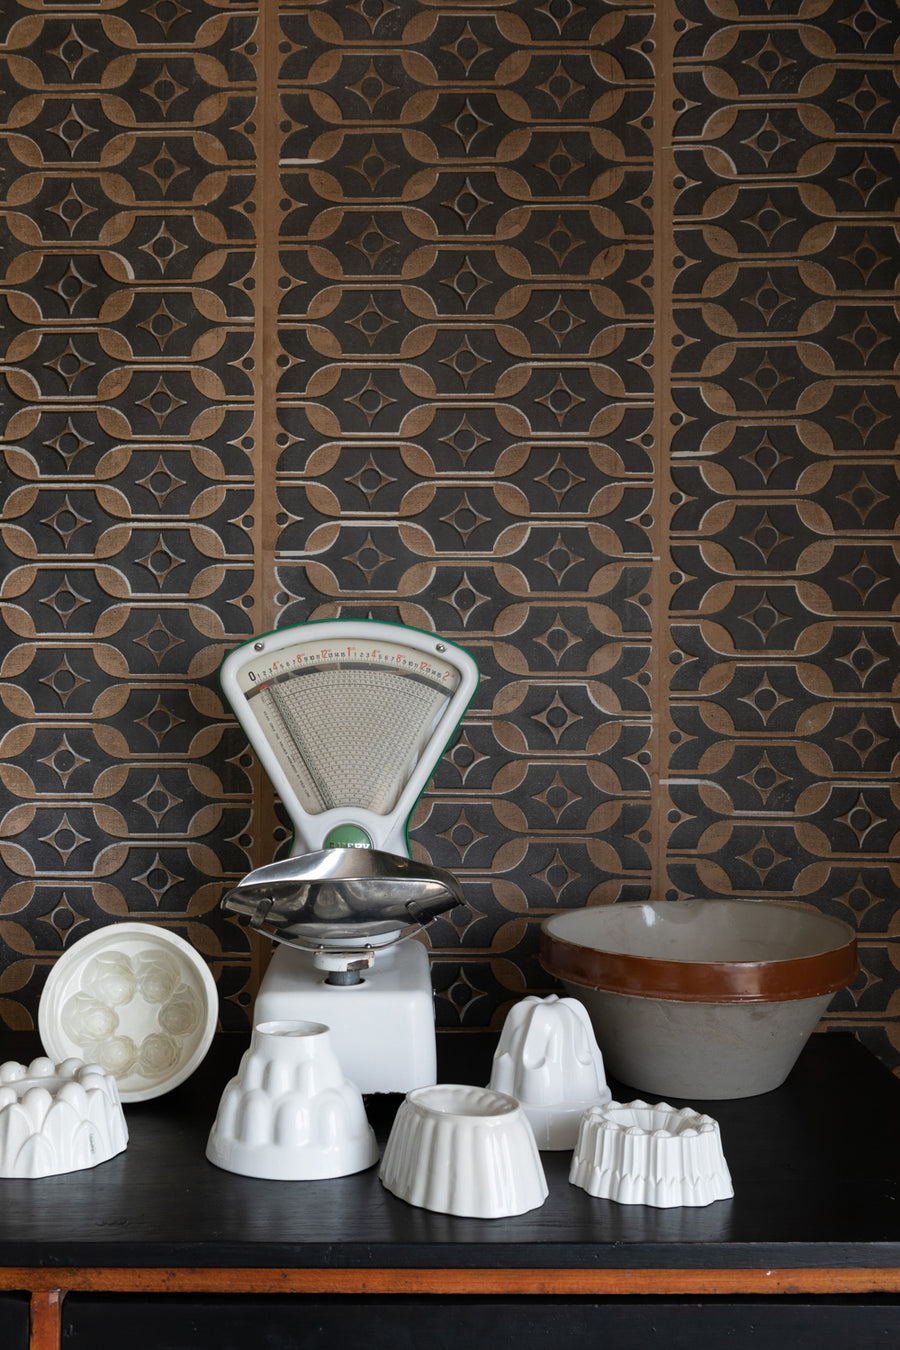 Deborah Bowness / HEIRLOOM / Tableware wallpaper Autumn brown